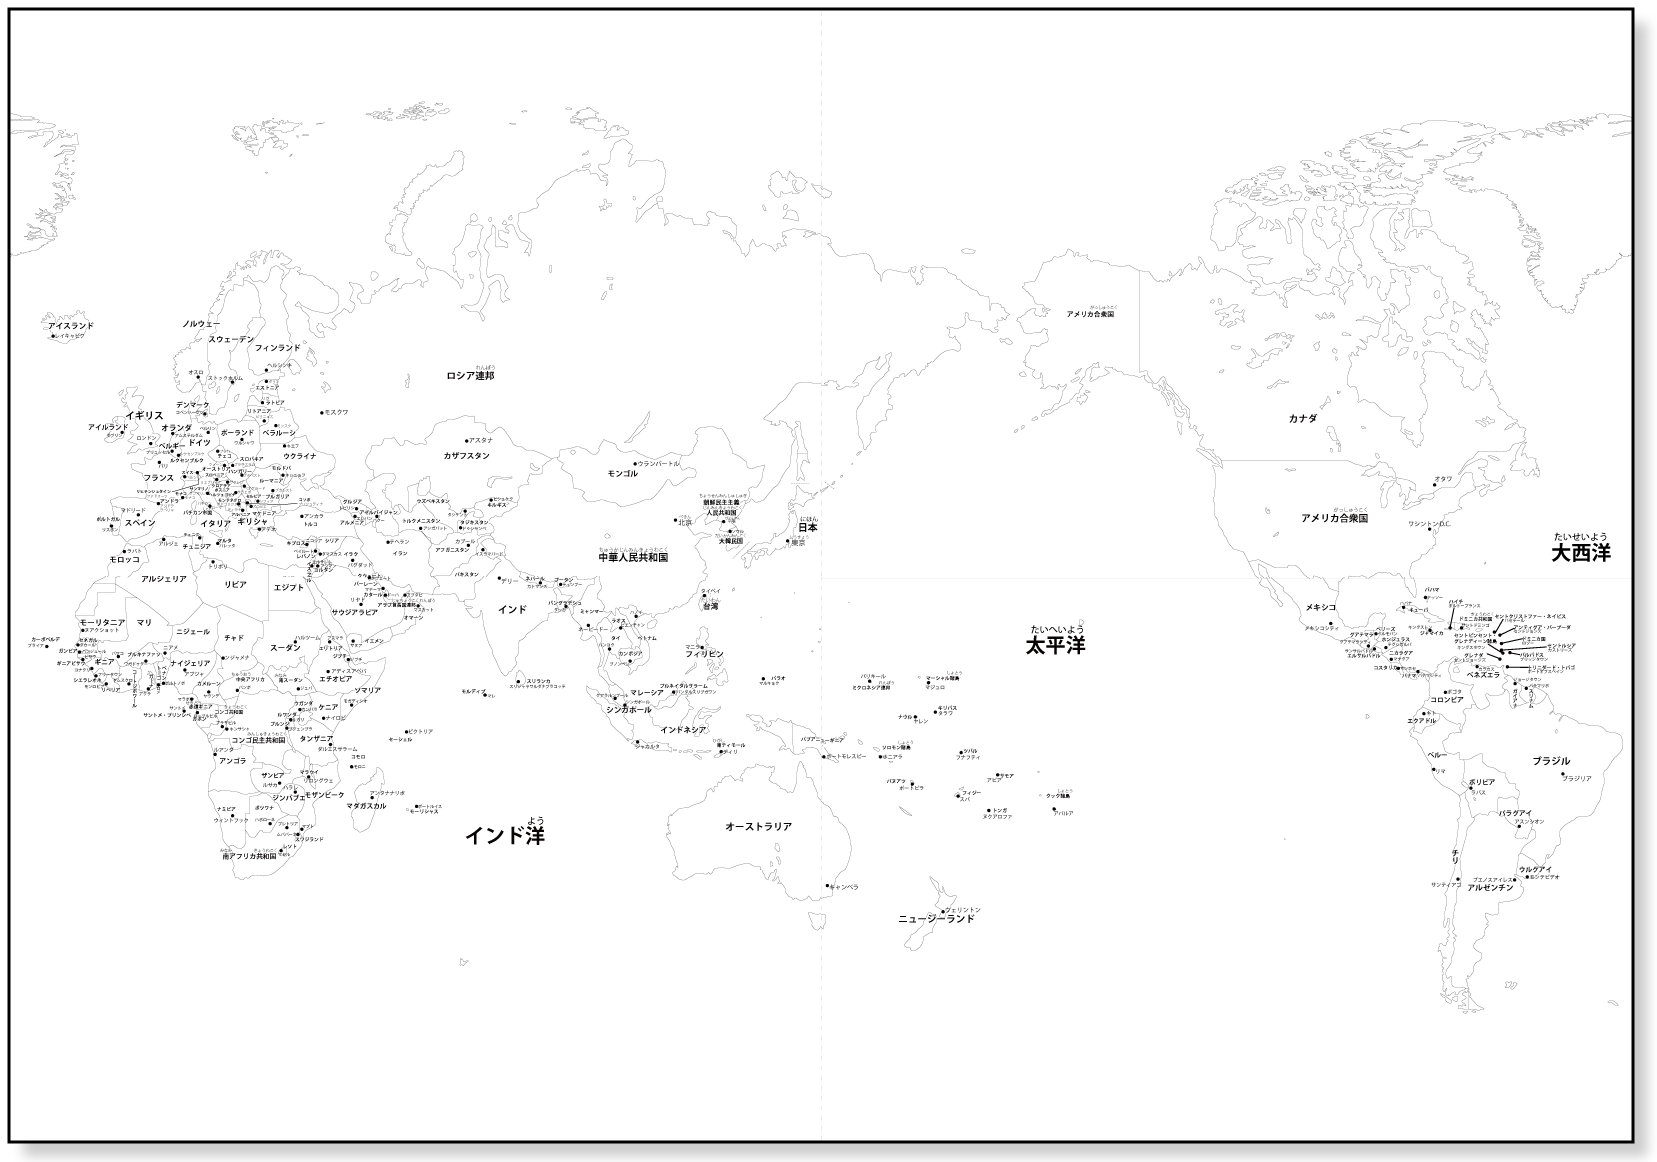 世界 地図 簡単 15秒で簡単に書ける 世界地図 略地図 の書き方